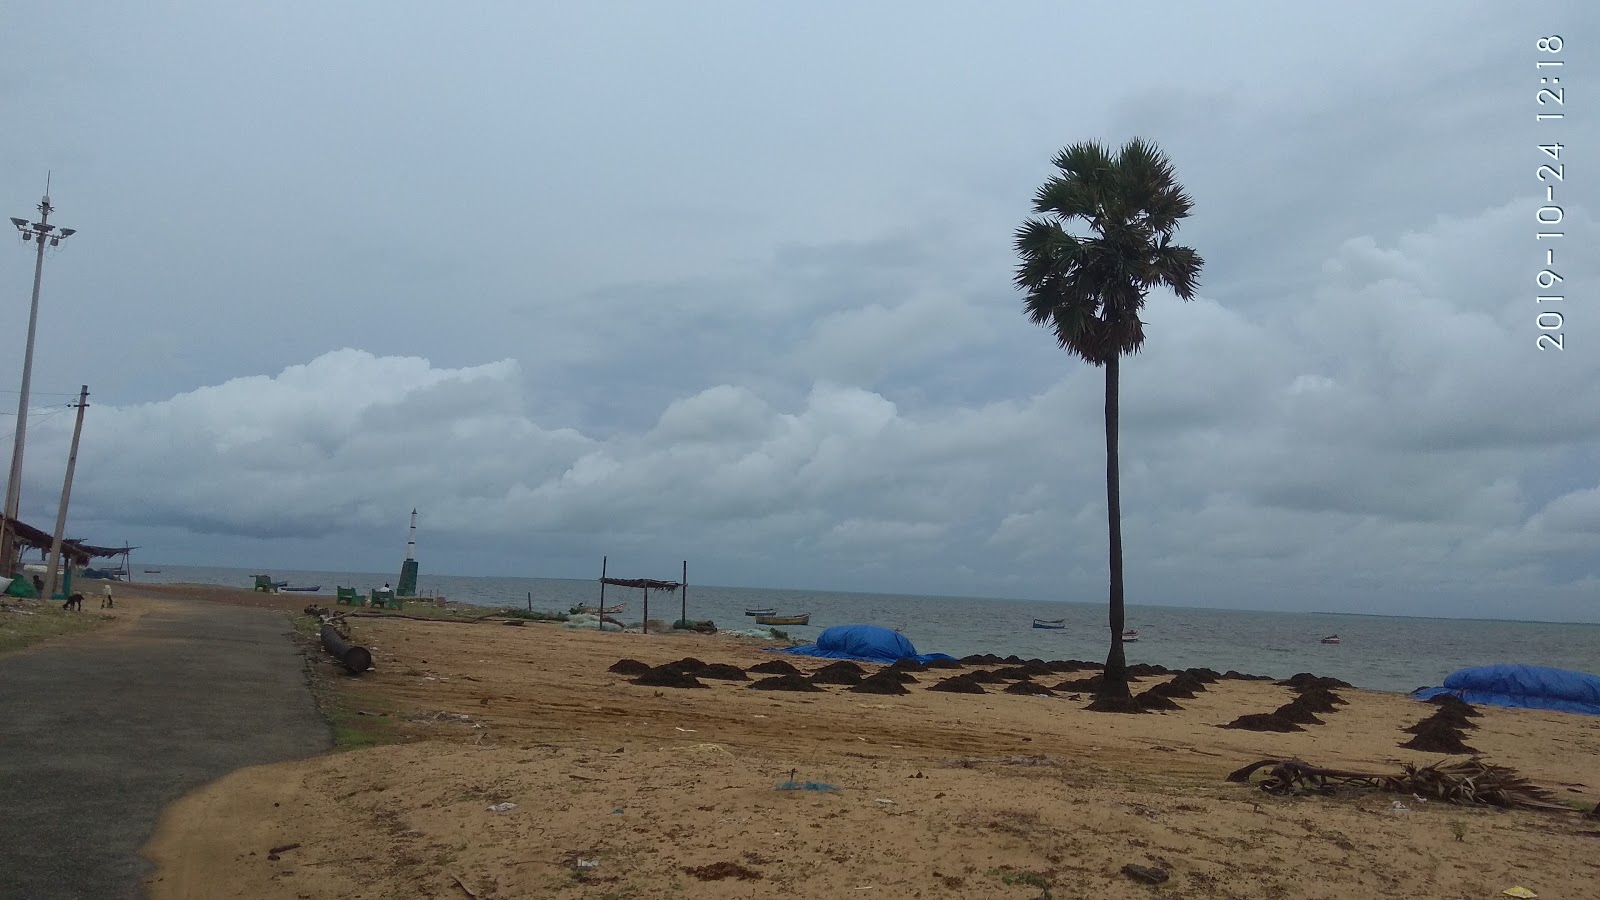 Fotografija Seeni Appa Dargha Beach priljubljeno mesto med poznavalci sprostitve